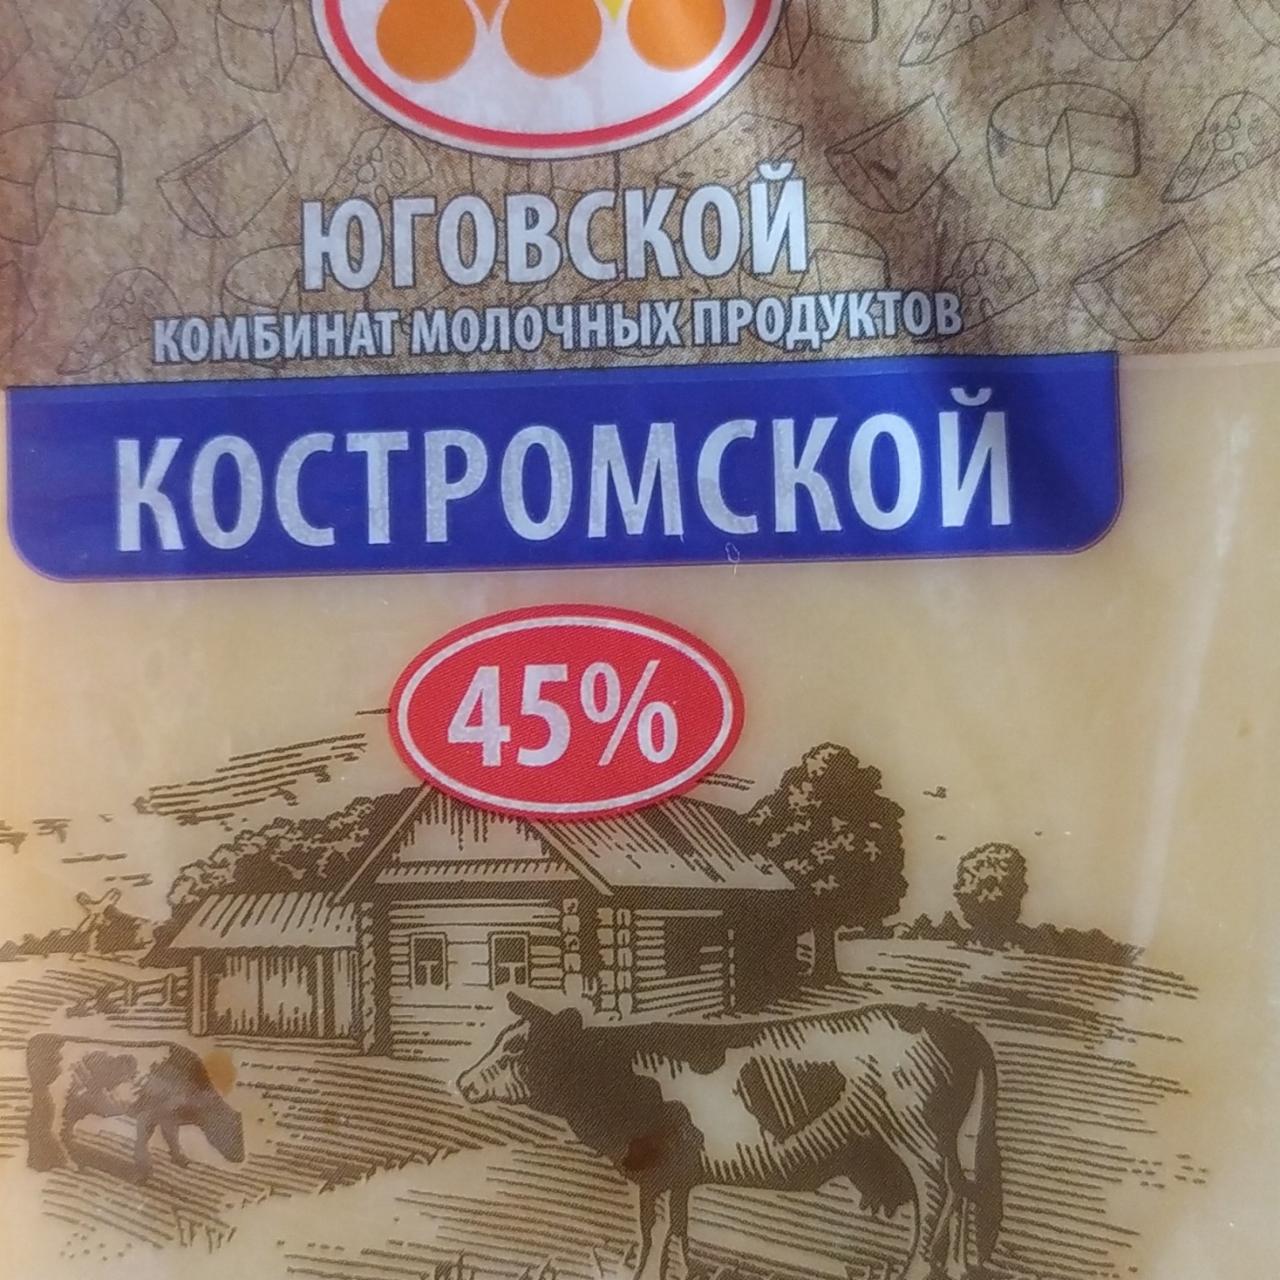 Фото - Сыр костромской Юговской комбинат молочных продуктов